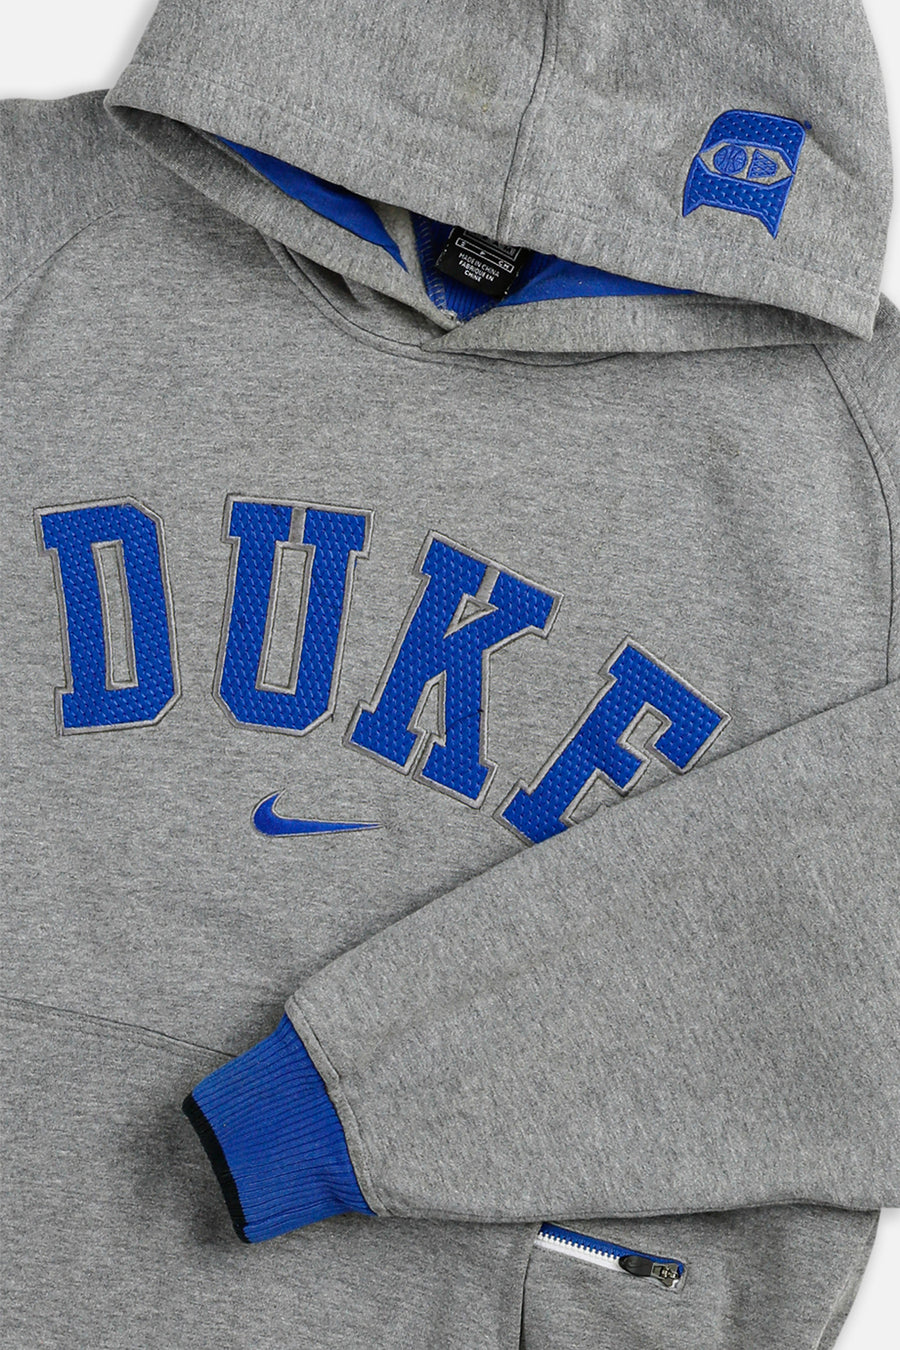 Vintage Duke Nike Team Sweatshirt - S